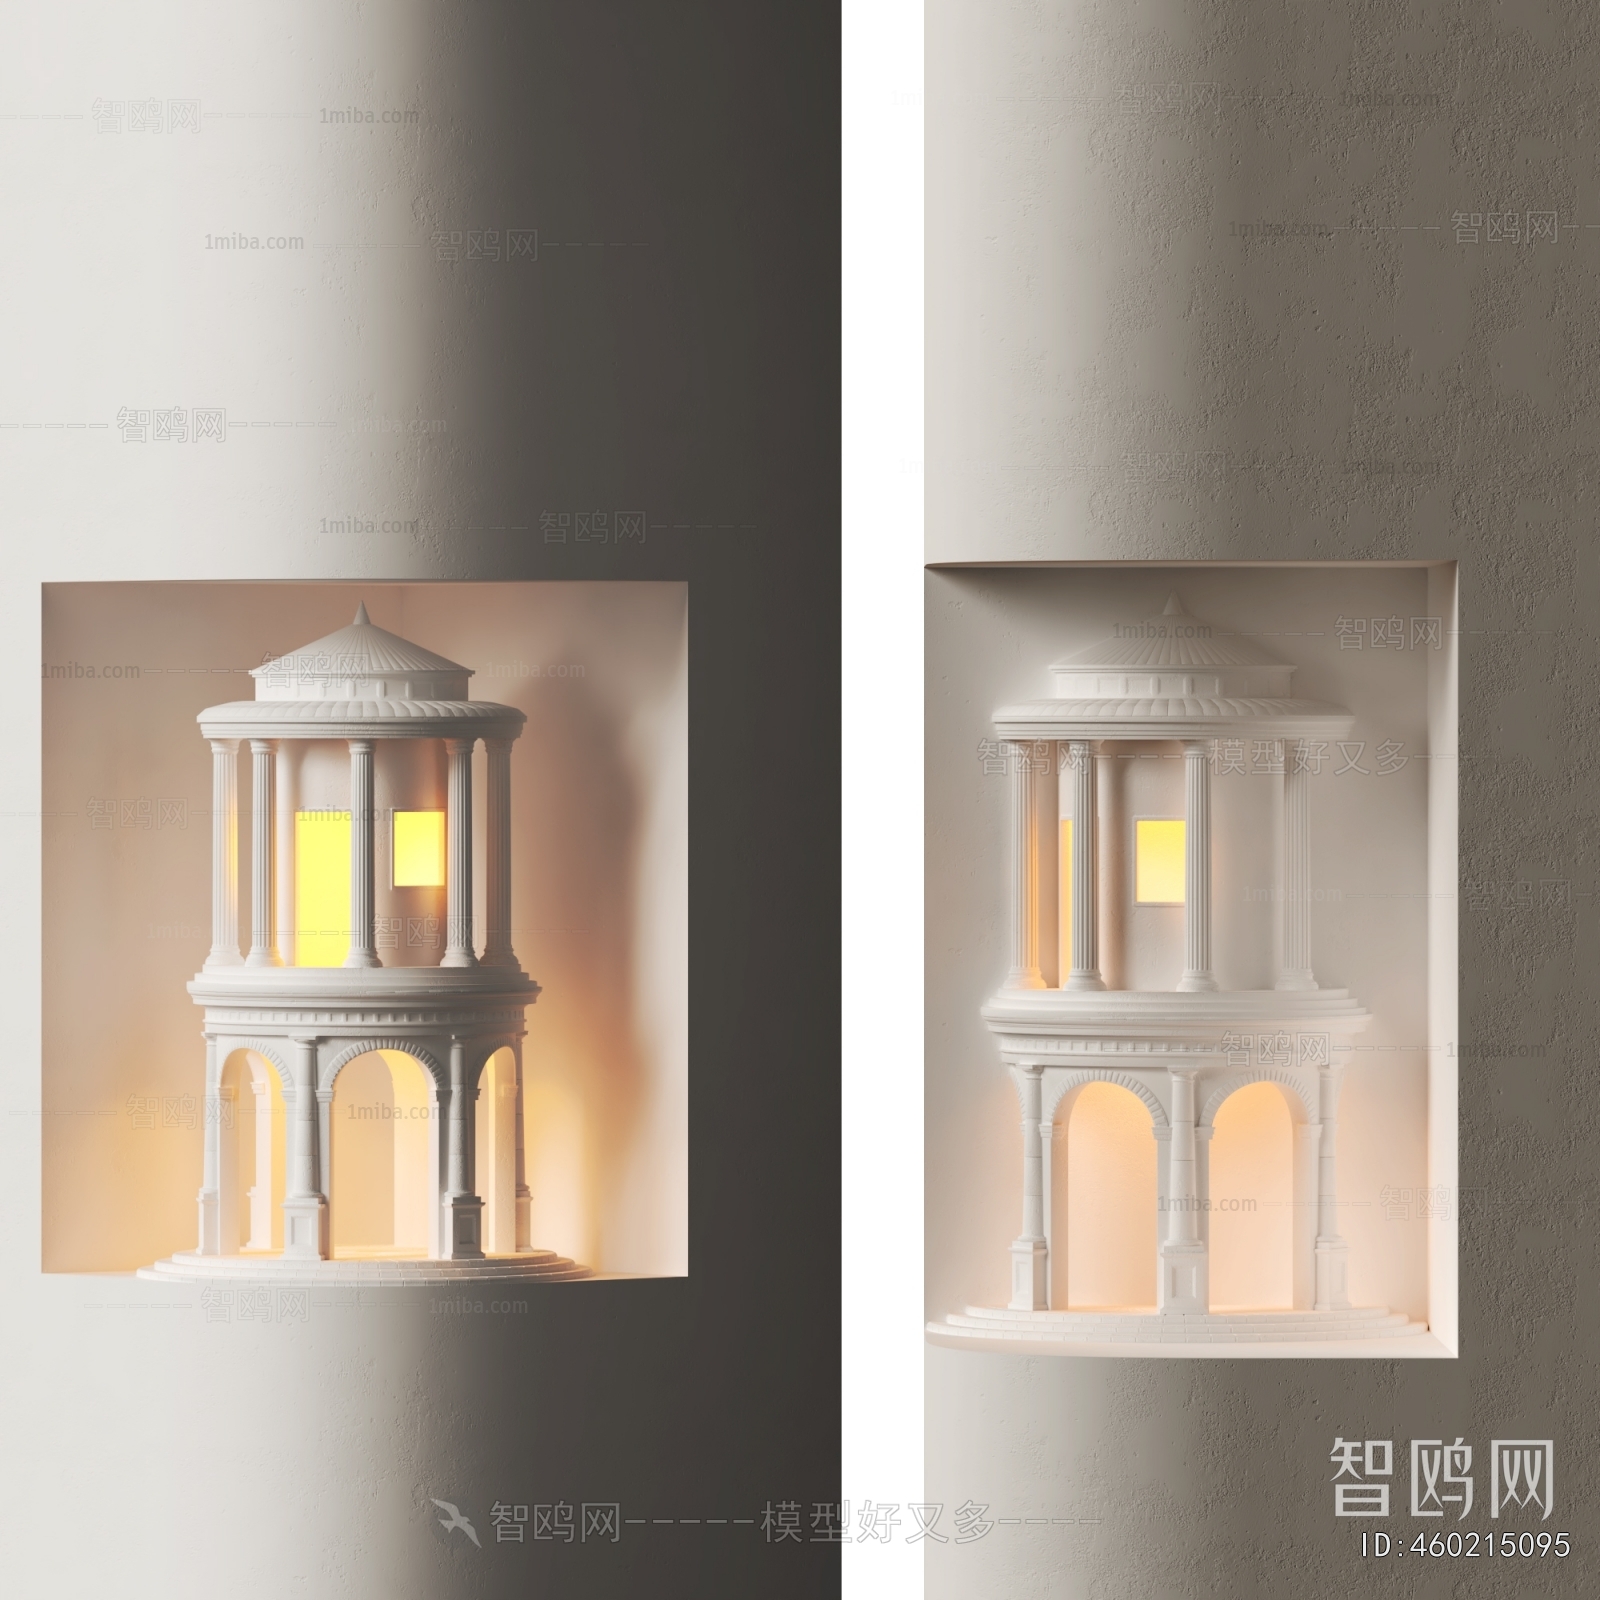 Wabi-sabi Style Wall Lamp